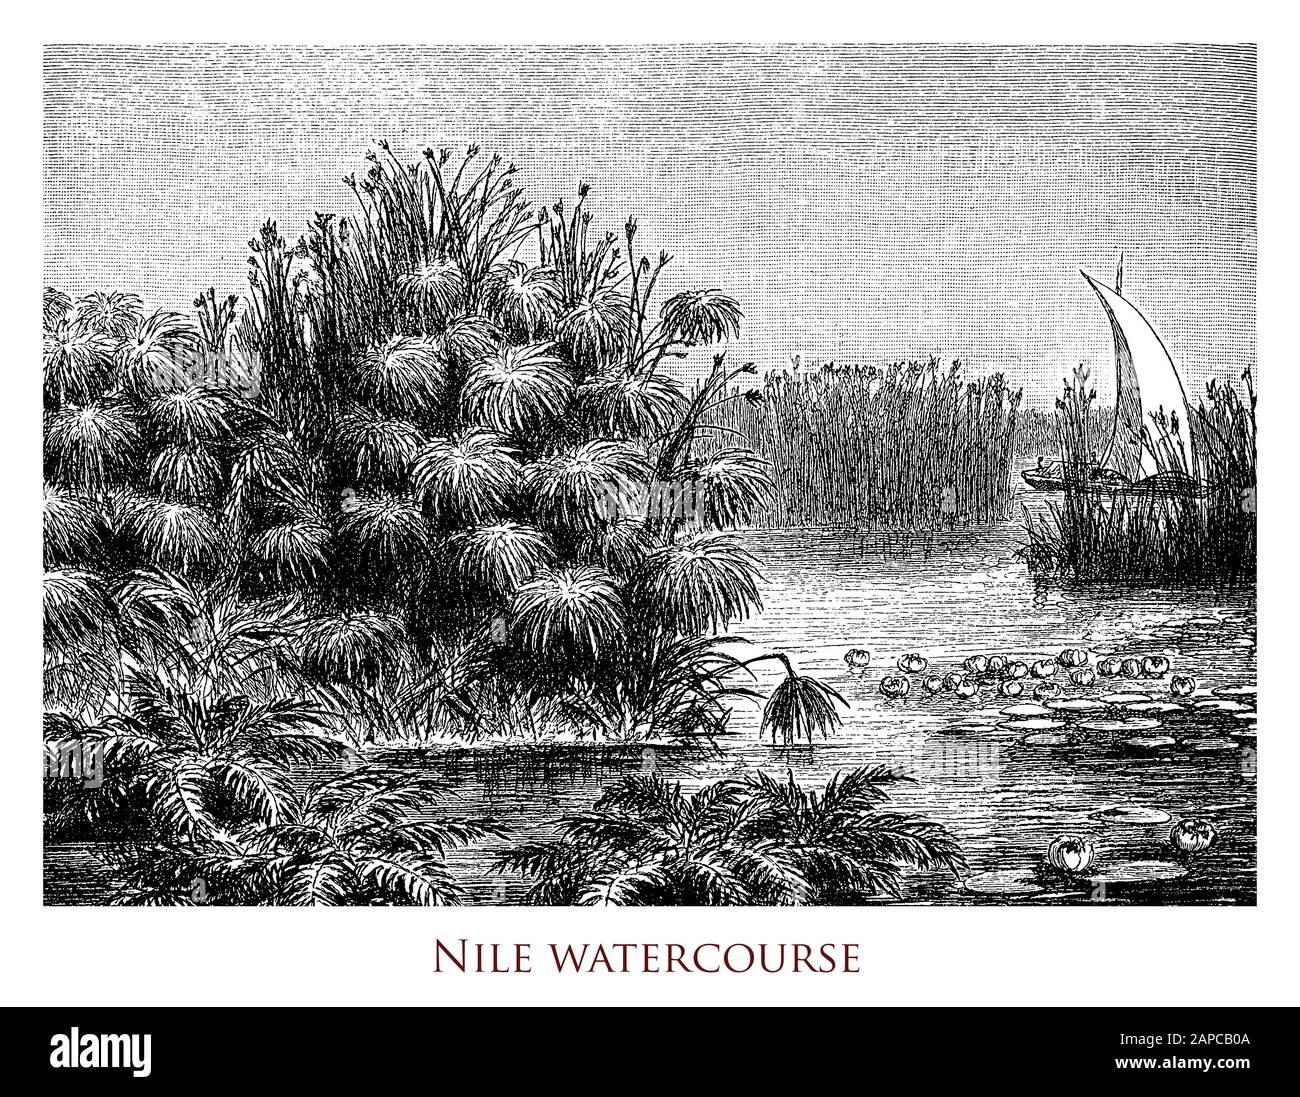 Il paesaggio idilliaco del corso d'acqua del fiume Nilo, il fiume più lungo del mondo situato nell'Africa centro-orientale, canale di navigazione naturale con ampie ramificazioni Foto Stock